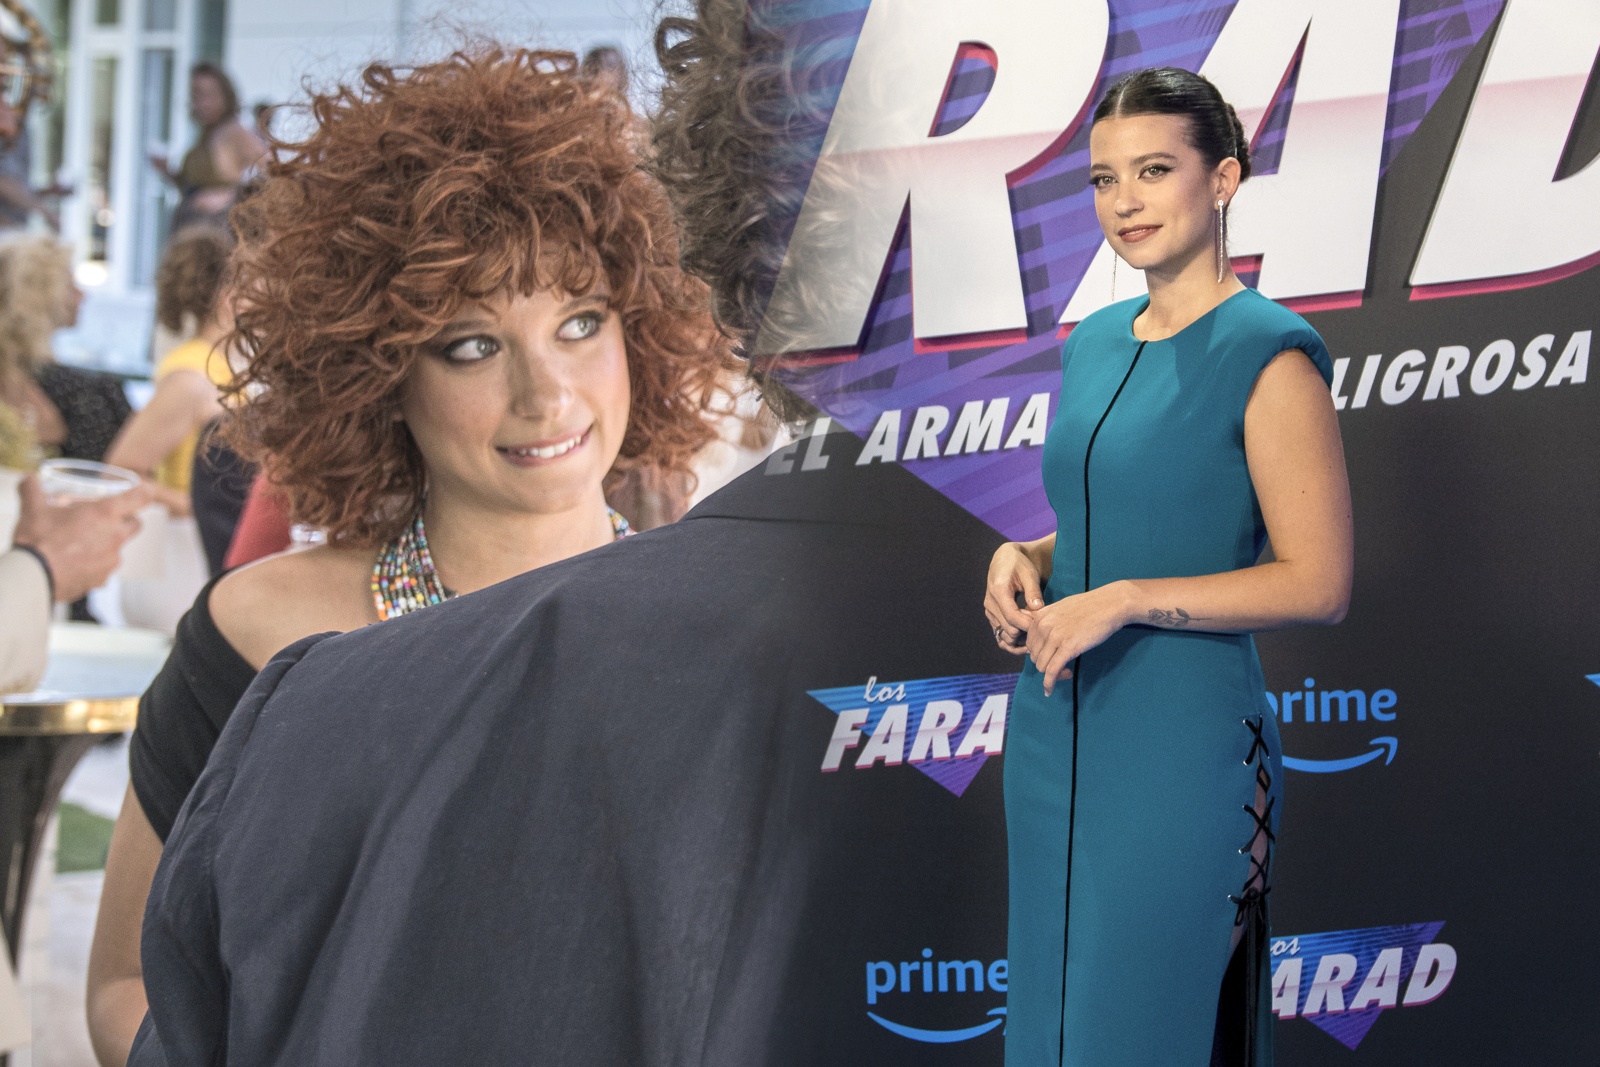 Amparo Piñero, Martina en La Promesa, forma parte del reparto de Los Farad, la nueva serie de Amazon Prime Video